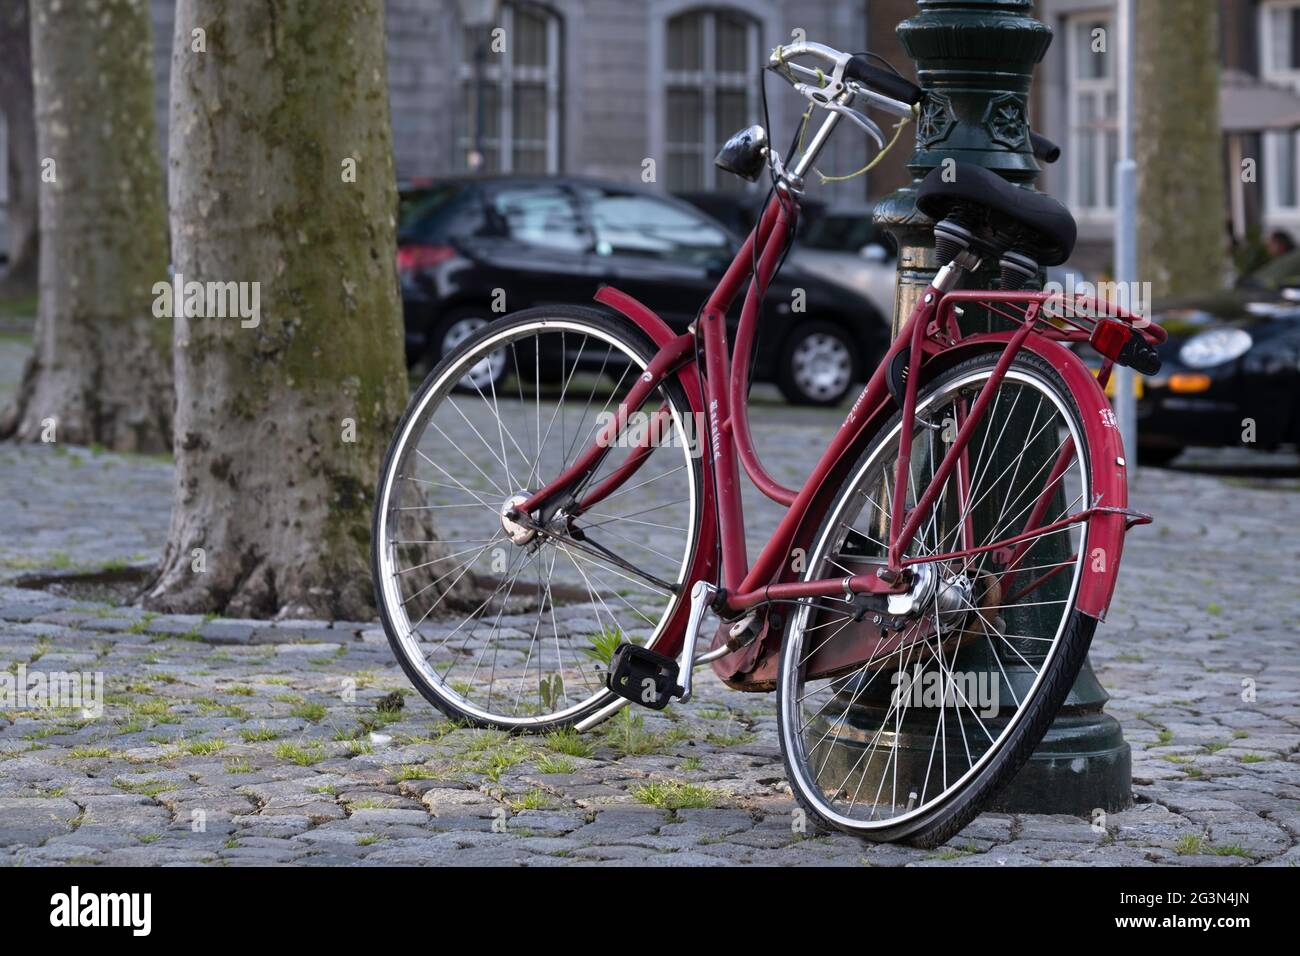 La bicicletta rossa con pneumatico posteriore piatto è bloccata contro un lampione antico su una piazza a Maastricht Foto Stock